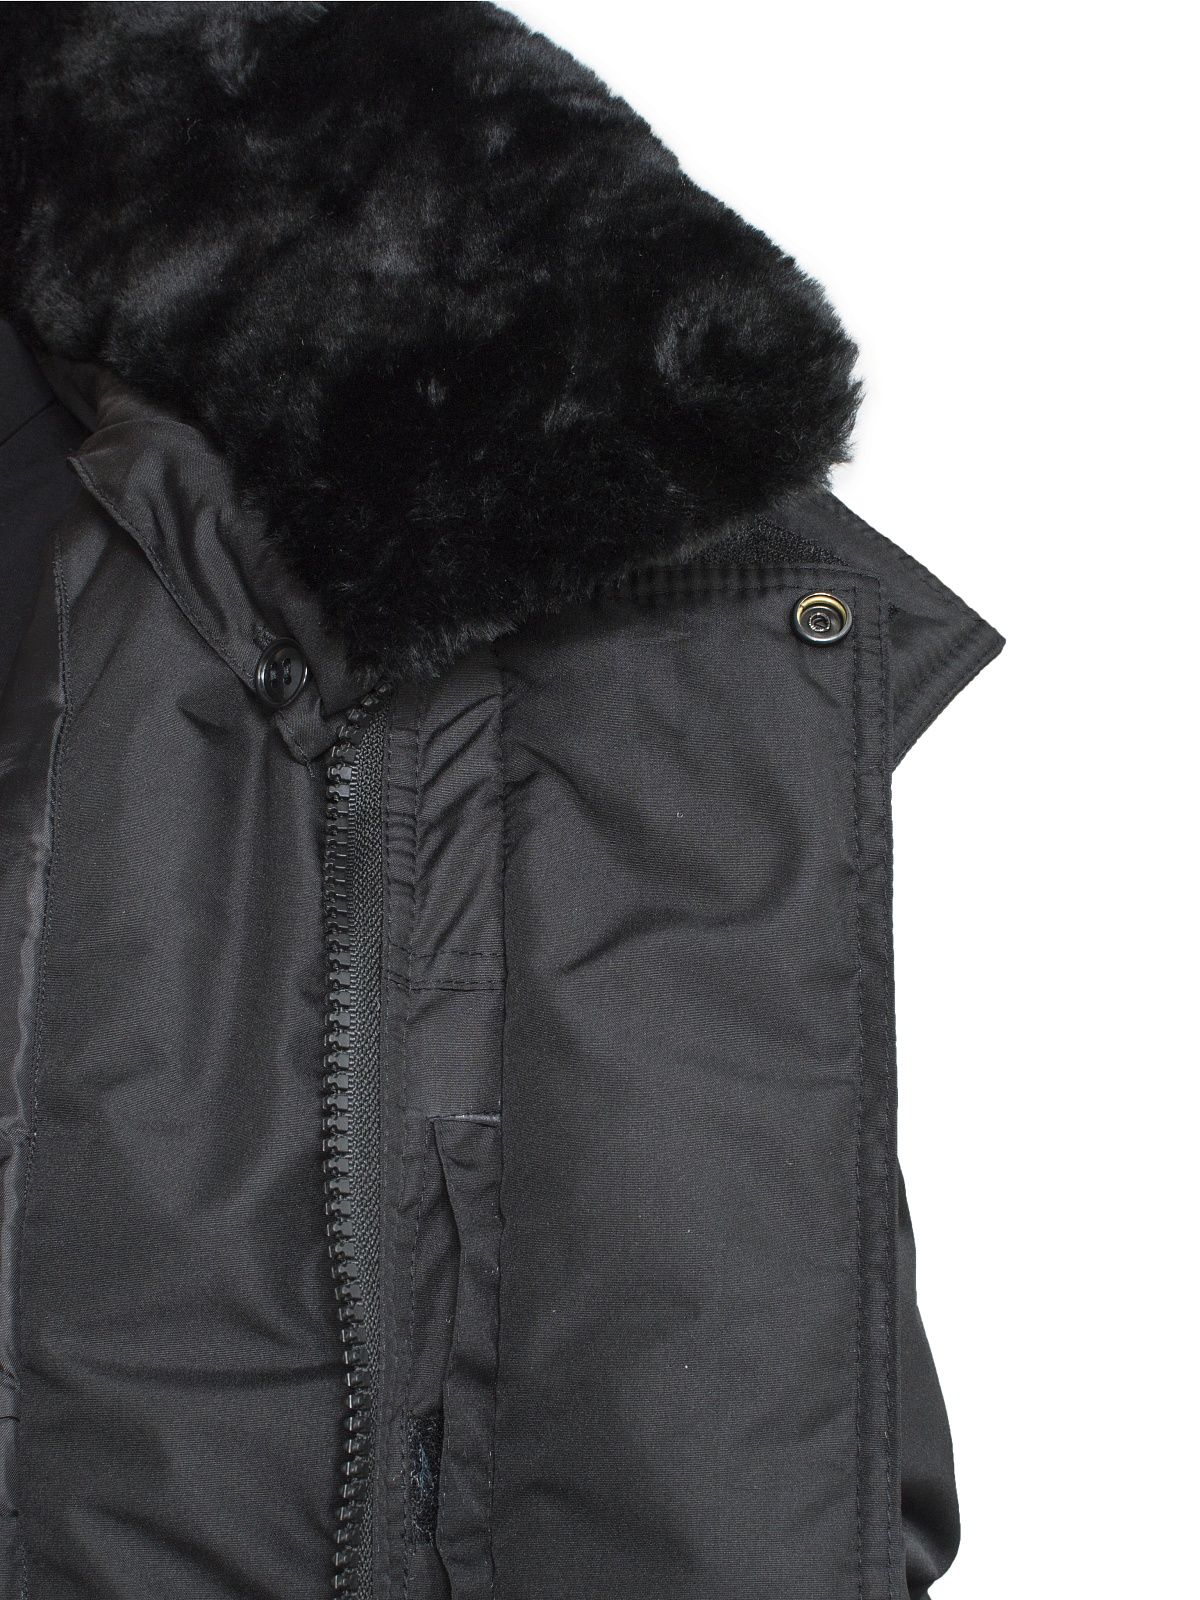 Куртка зимняя PROFARMY П-1 таслан